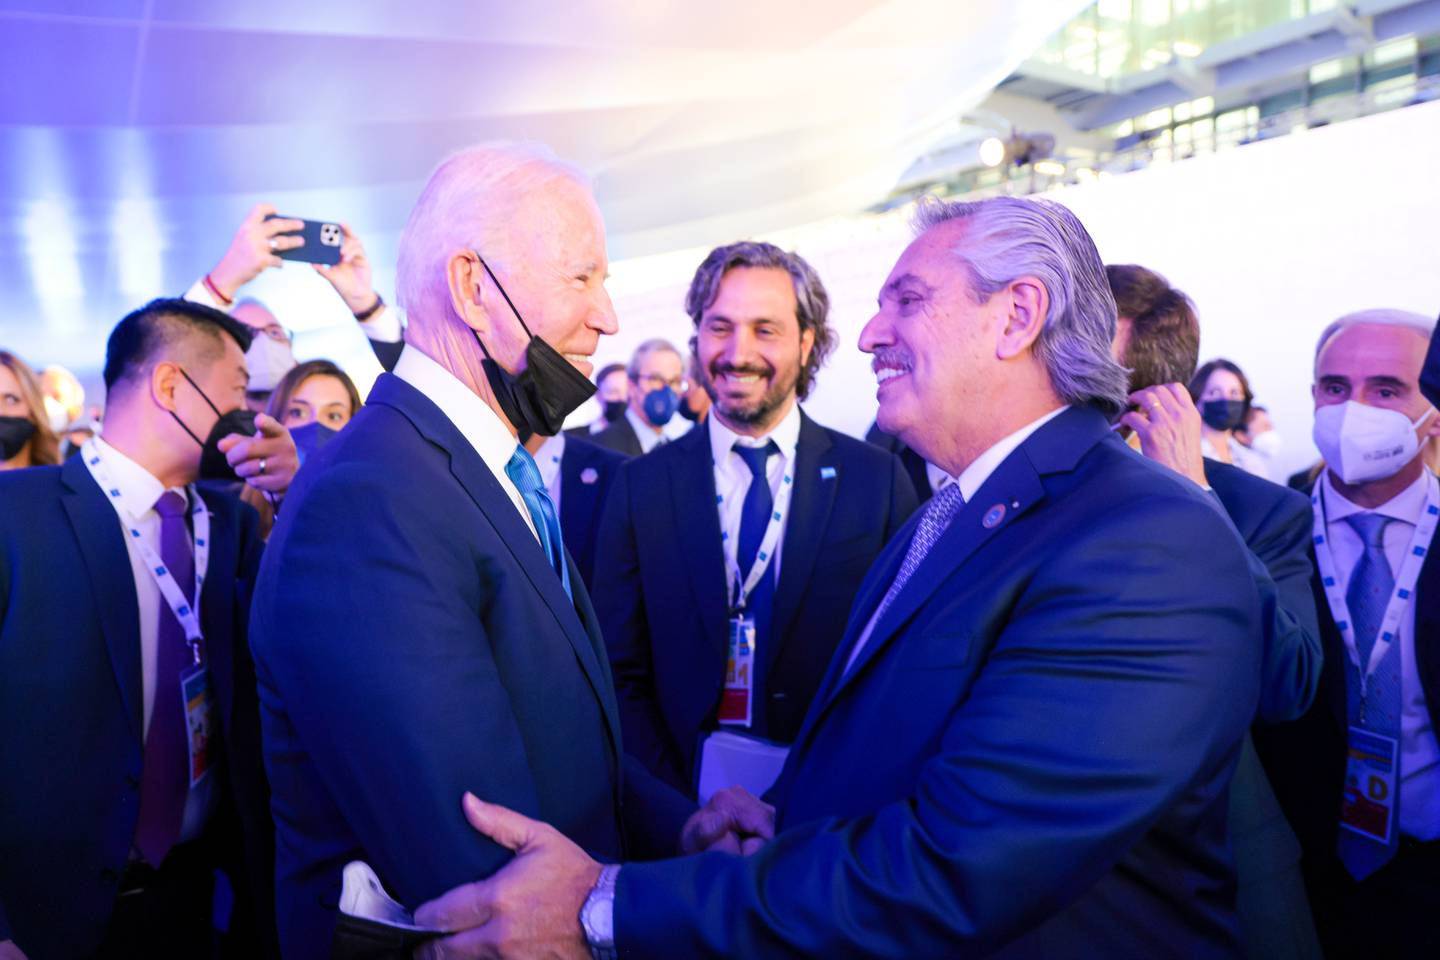 El presidente argentino conversó unos minutos con su par norteamericano, Joe Biden.dfd